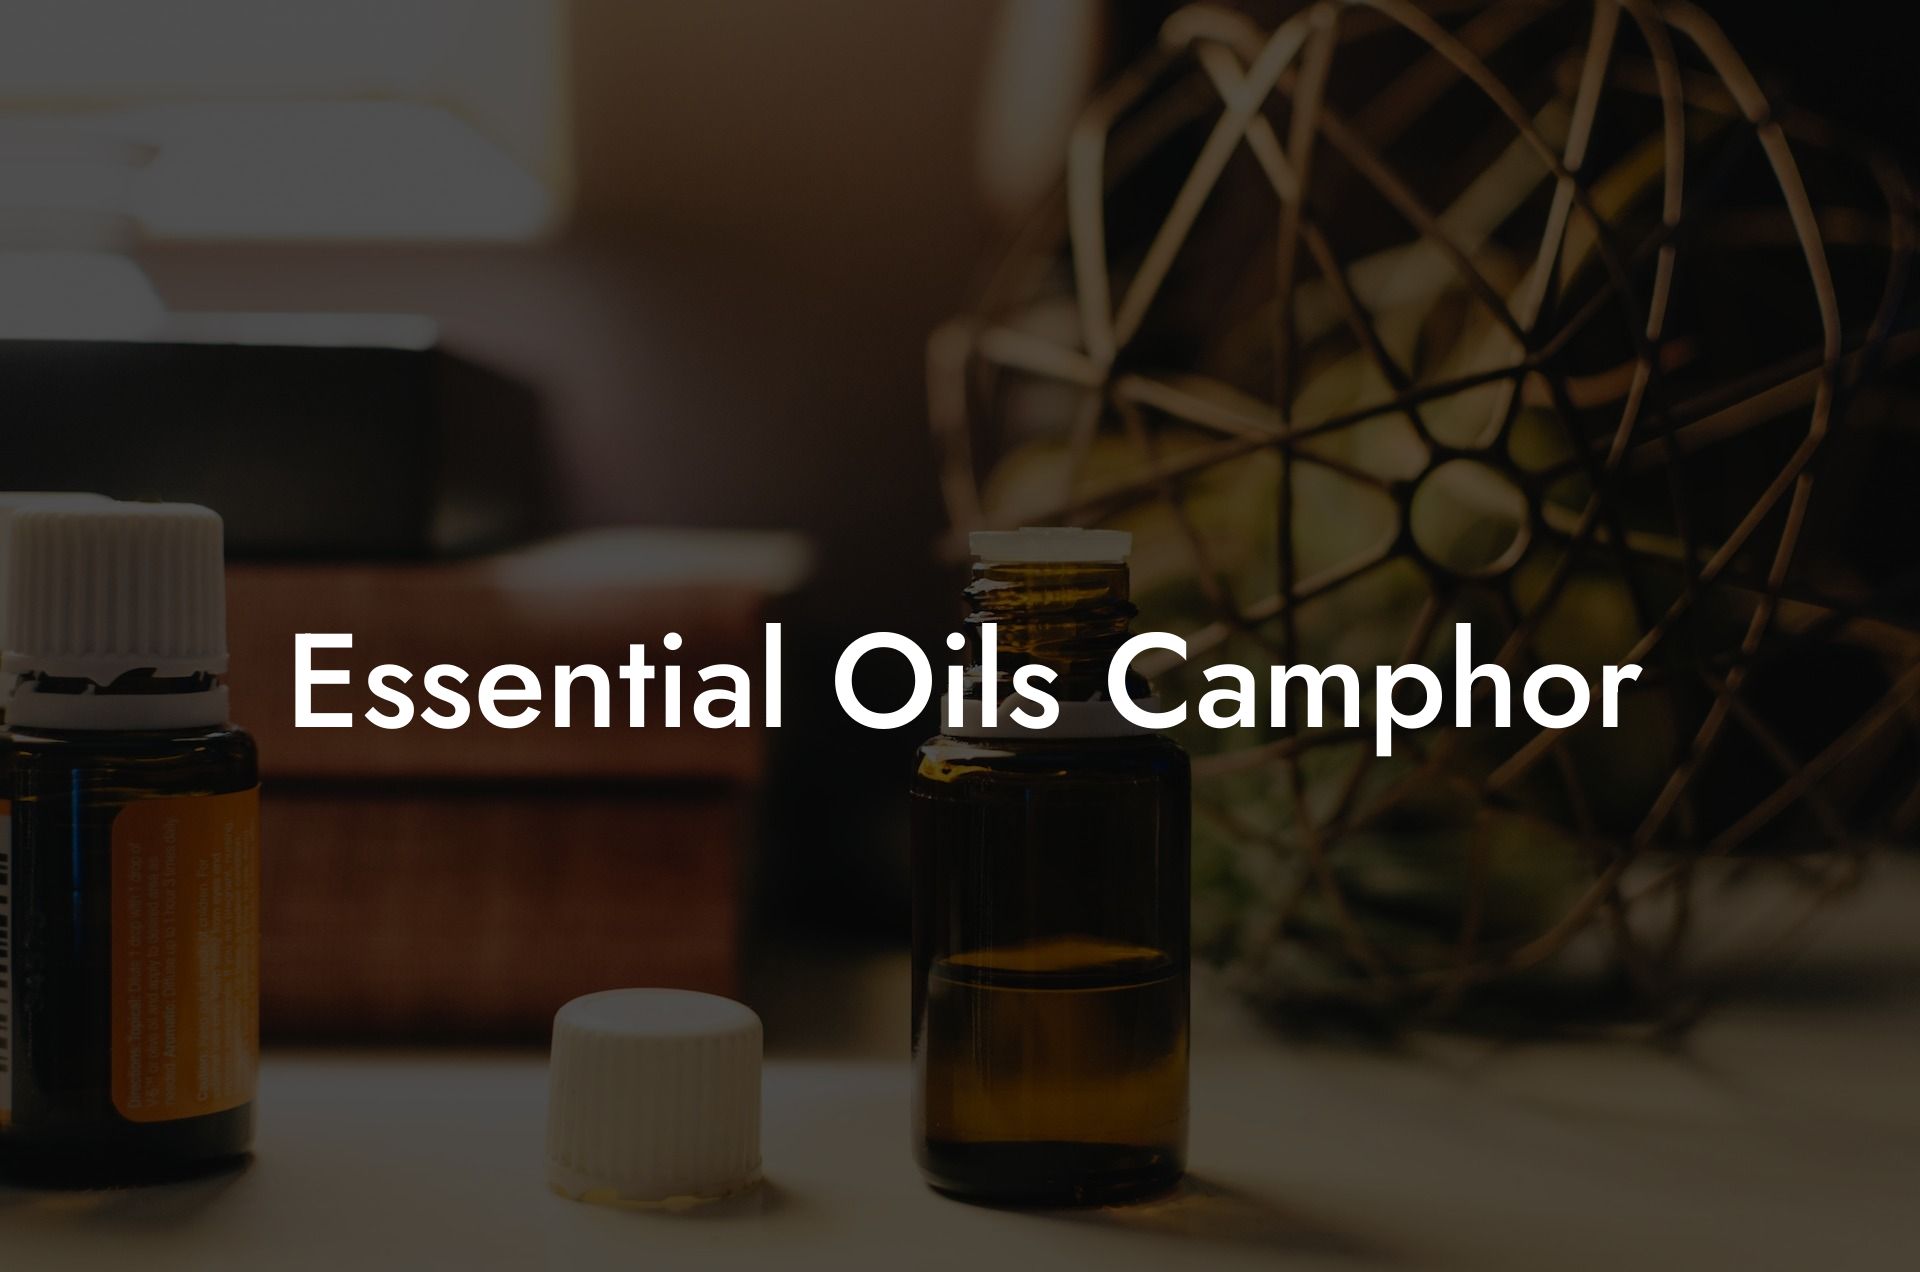 Essential Oils Camphor